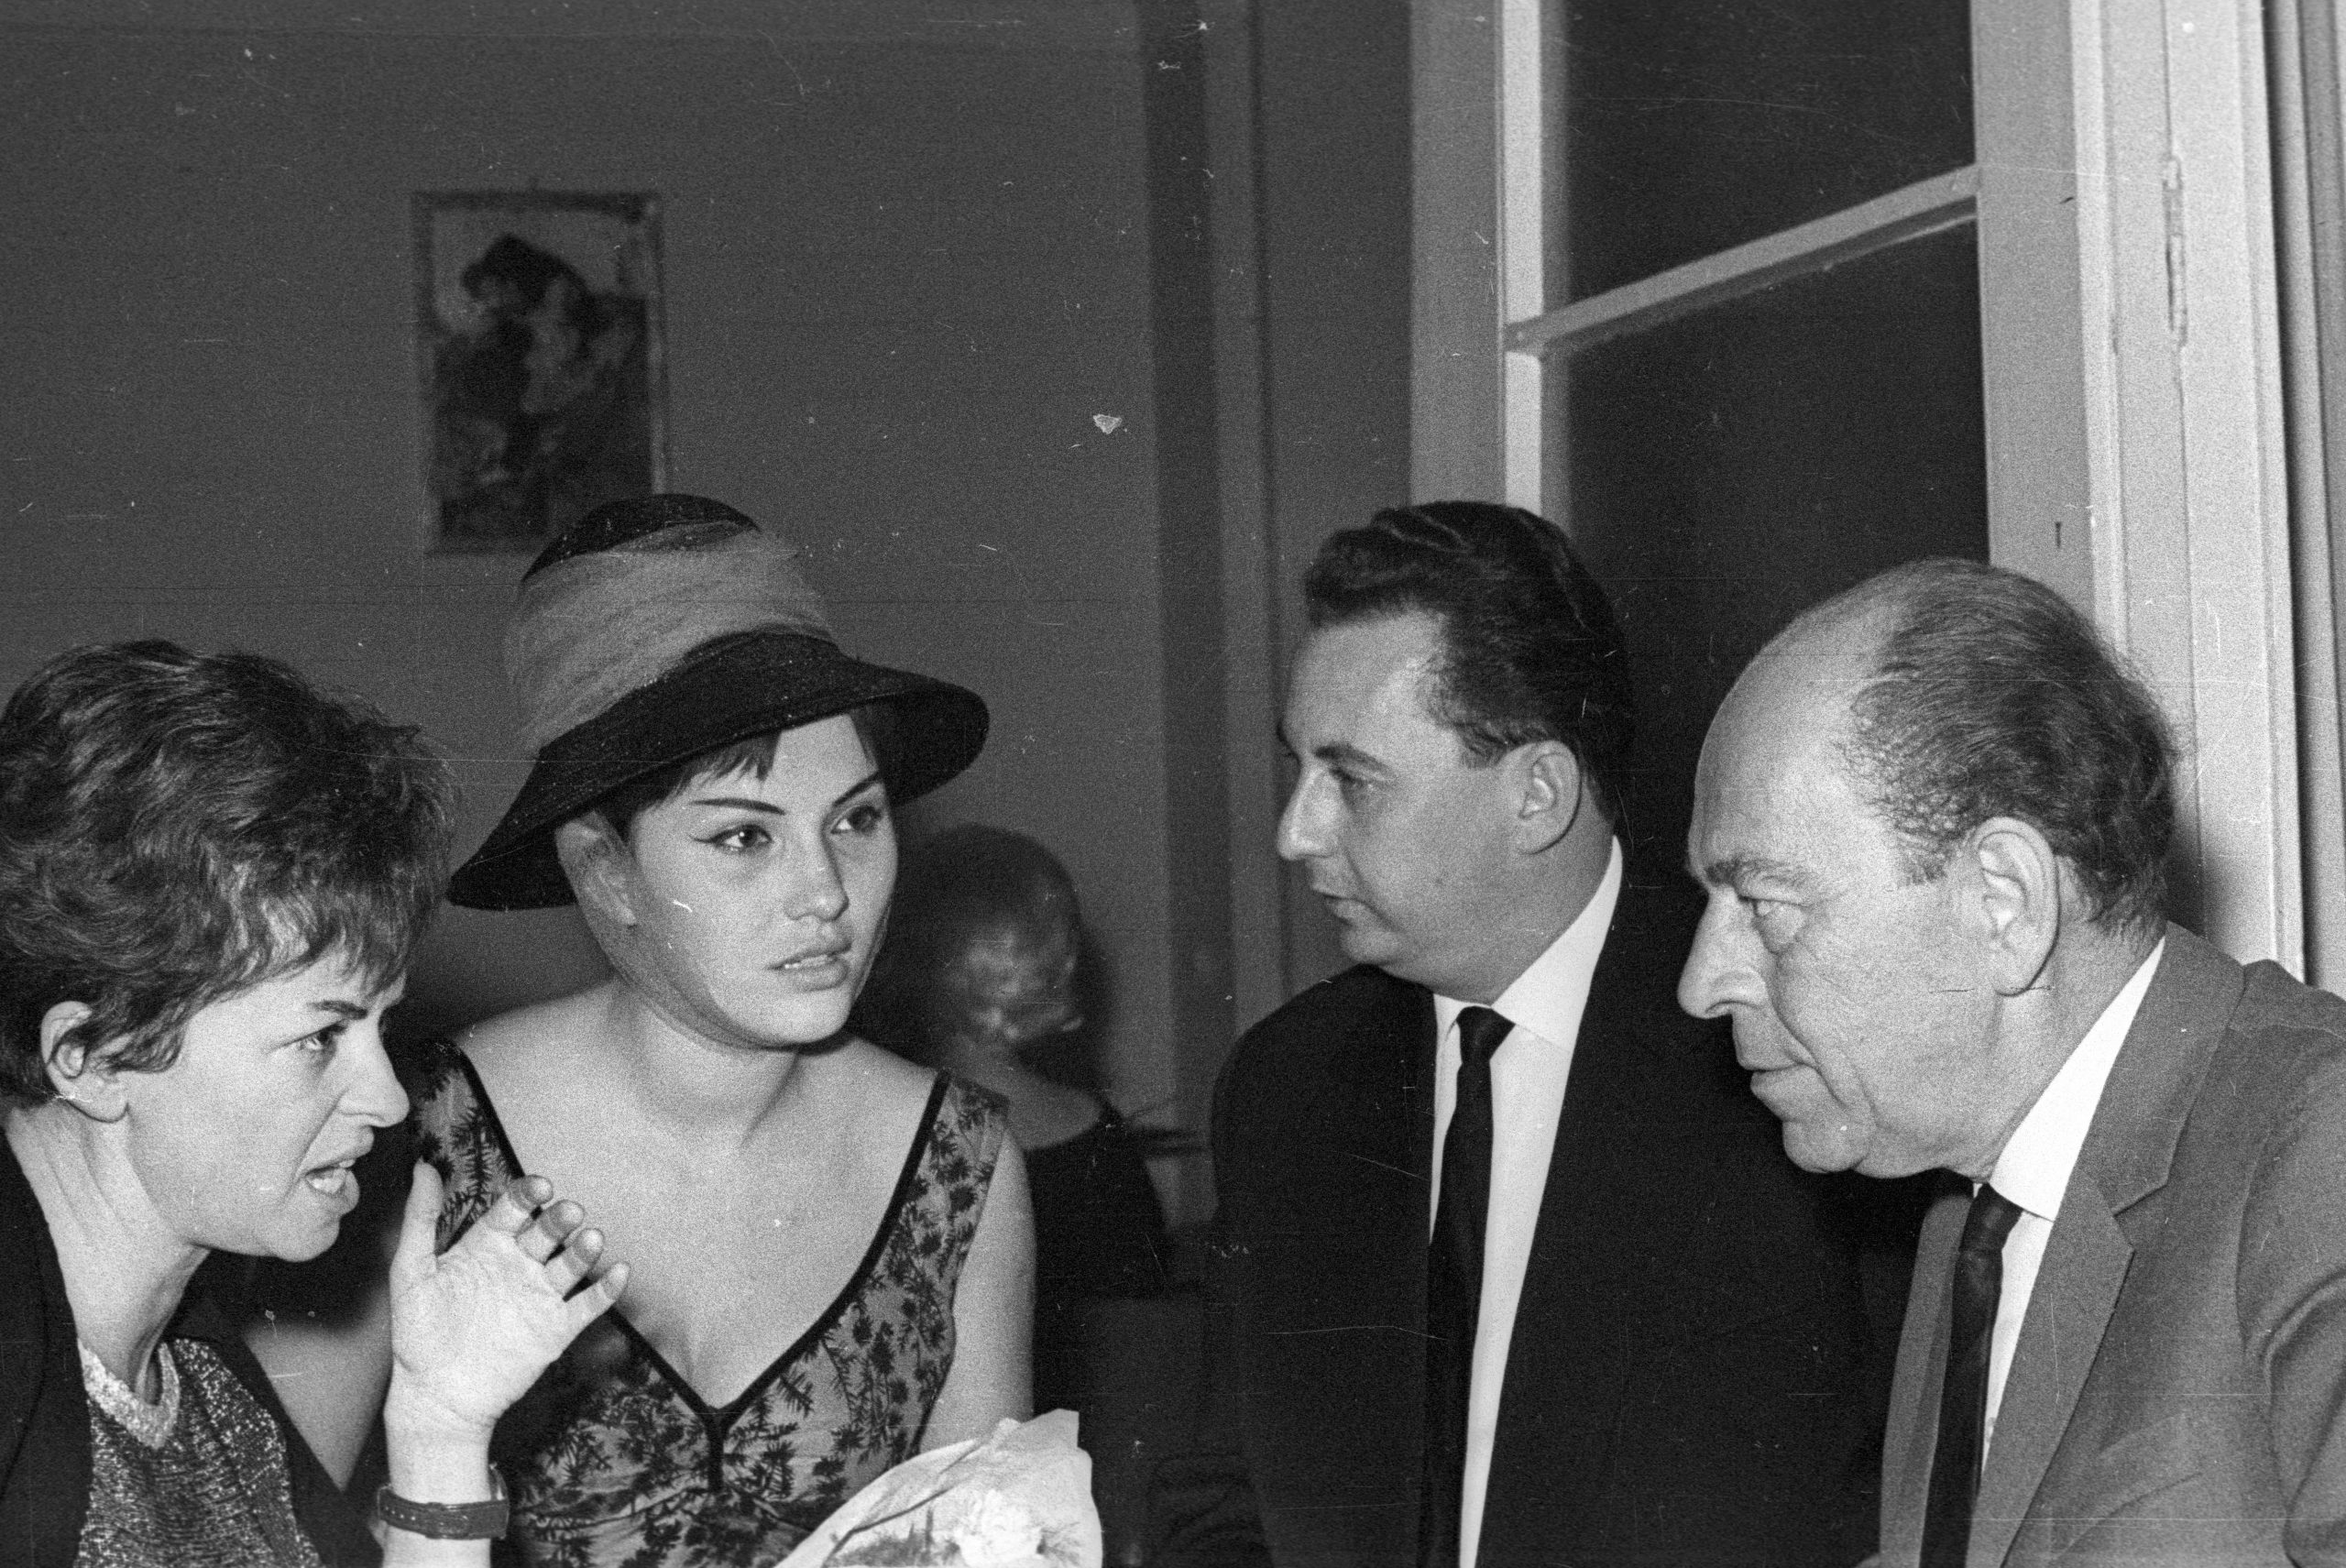 kalapban Pécsi Ildikó színművésznő, a jobb szélen Örkény István író. 1966-ban Fortepan/Hunyady József